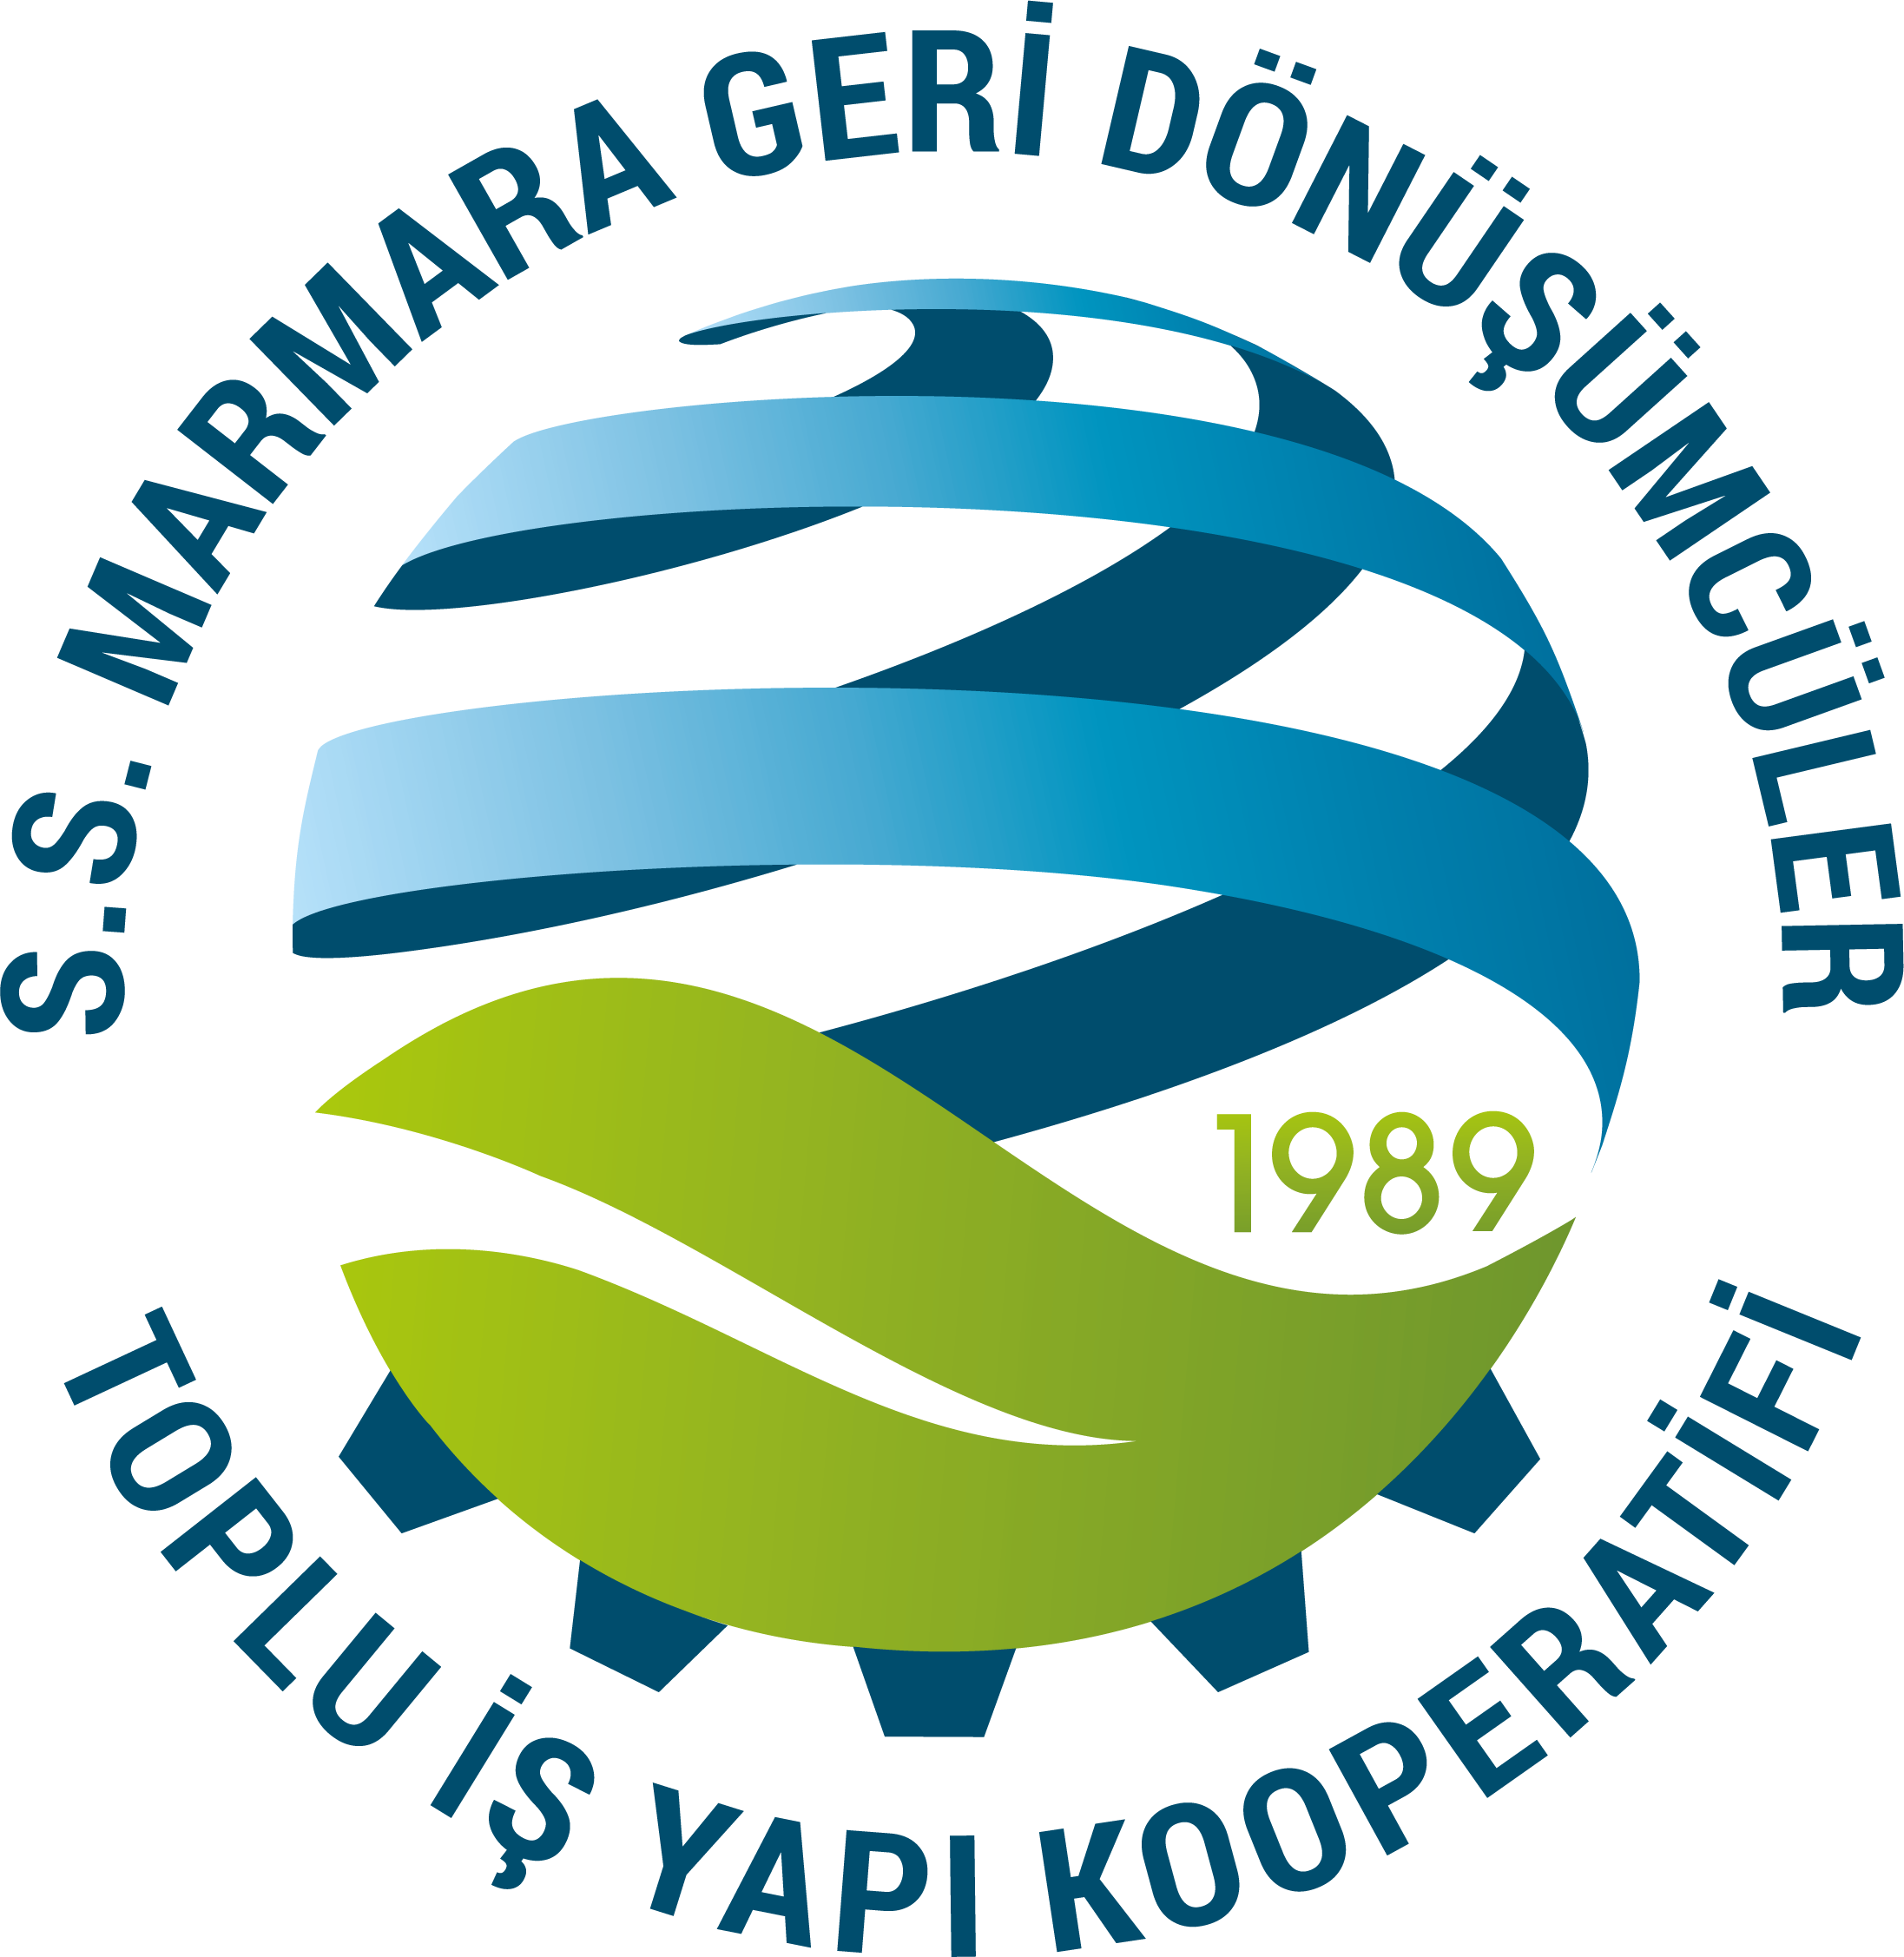 Marmara geri dönüşümcüler logo